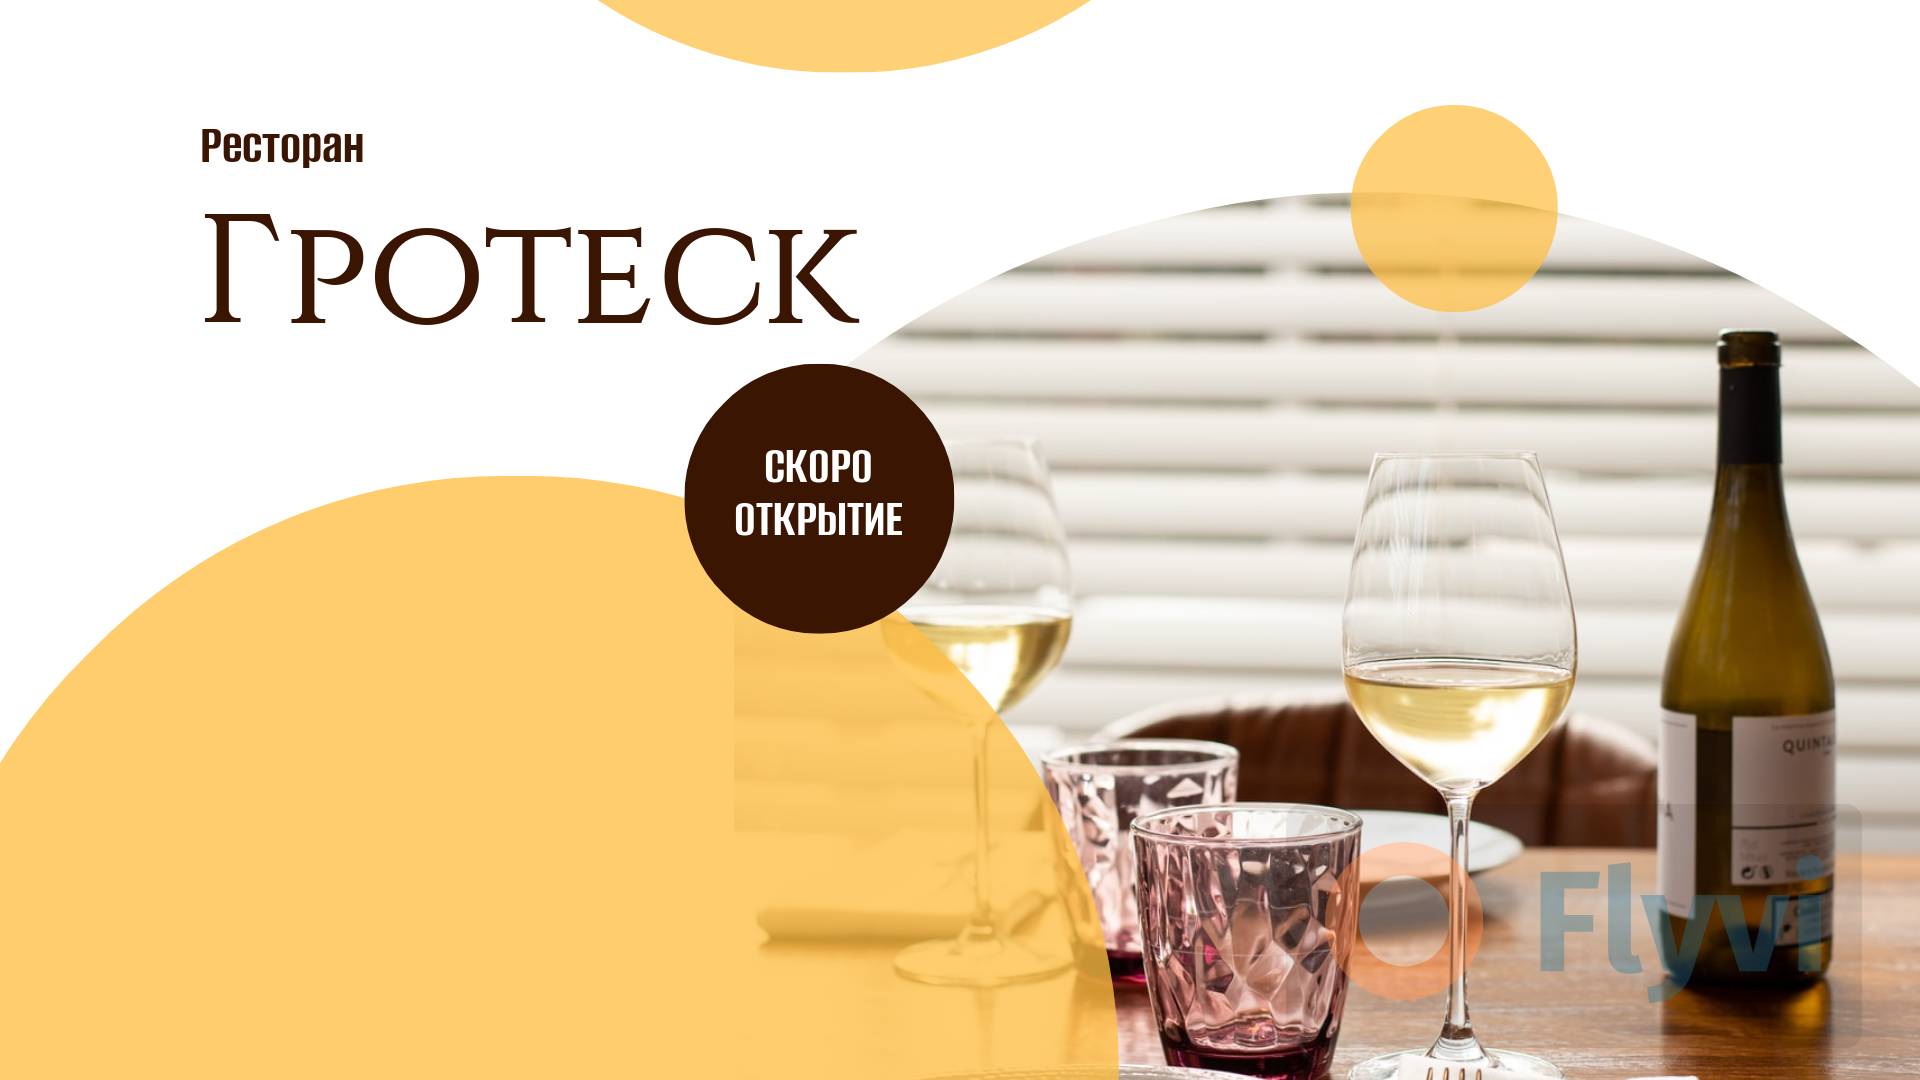 Белое вино и херес в изящных стеклянных бокалах в стильном посте для рекламы открытия  ресторана